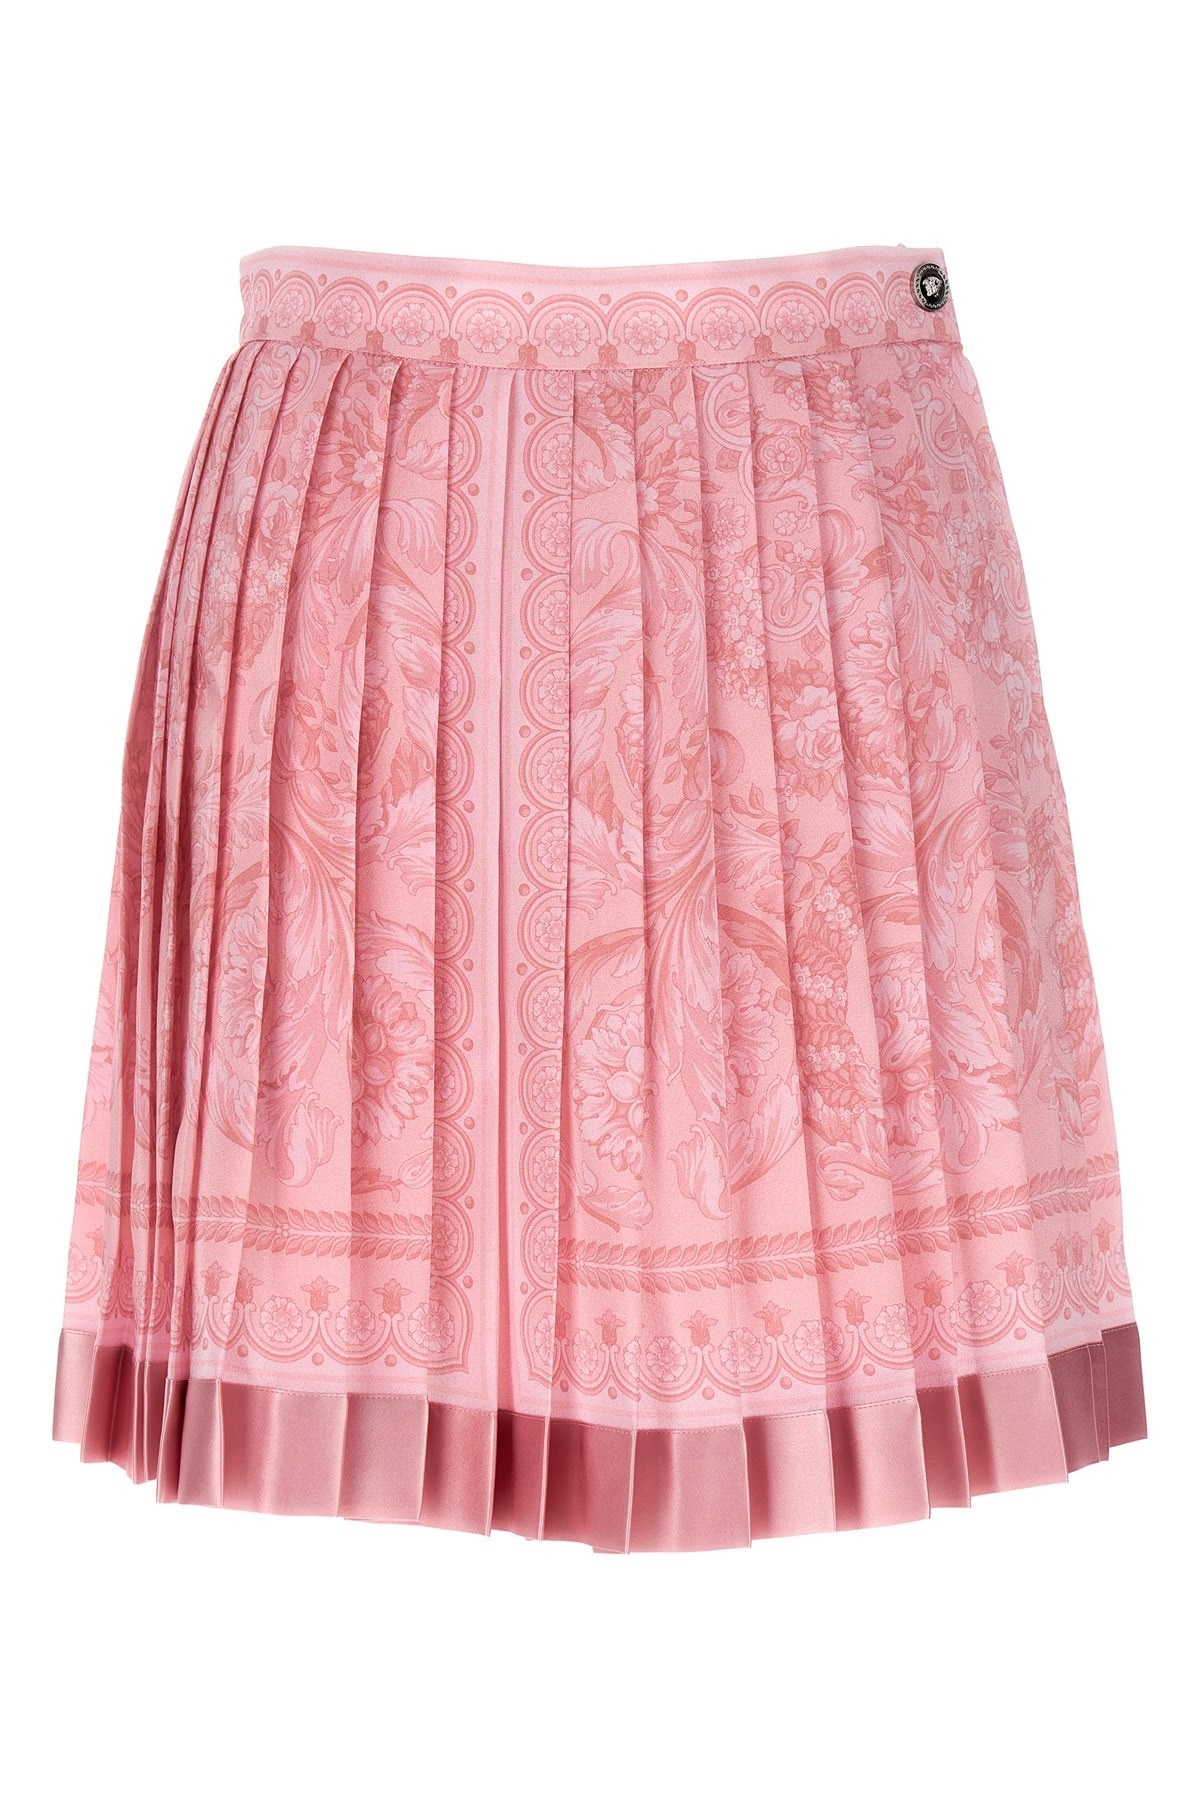 'Barocco' skirt - 1